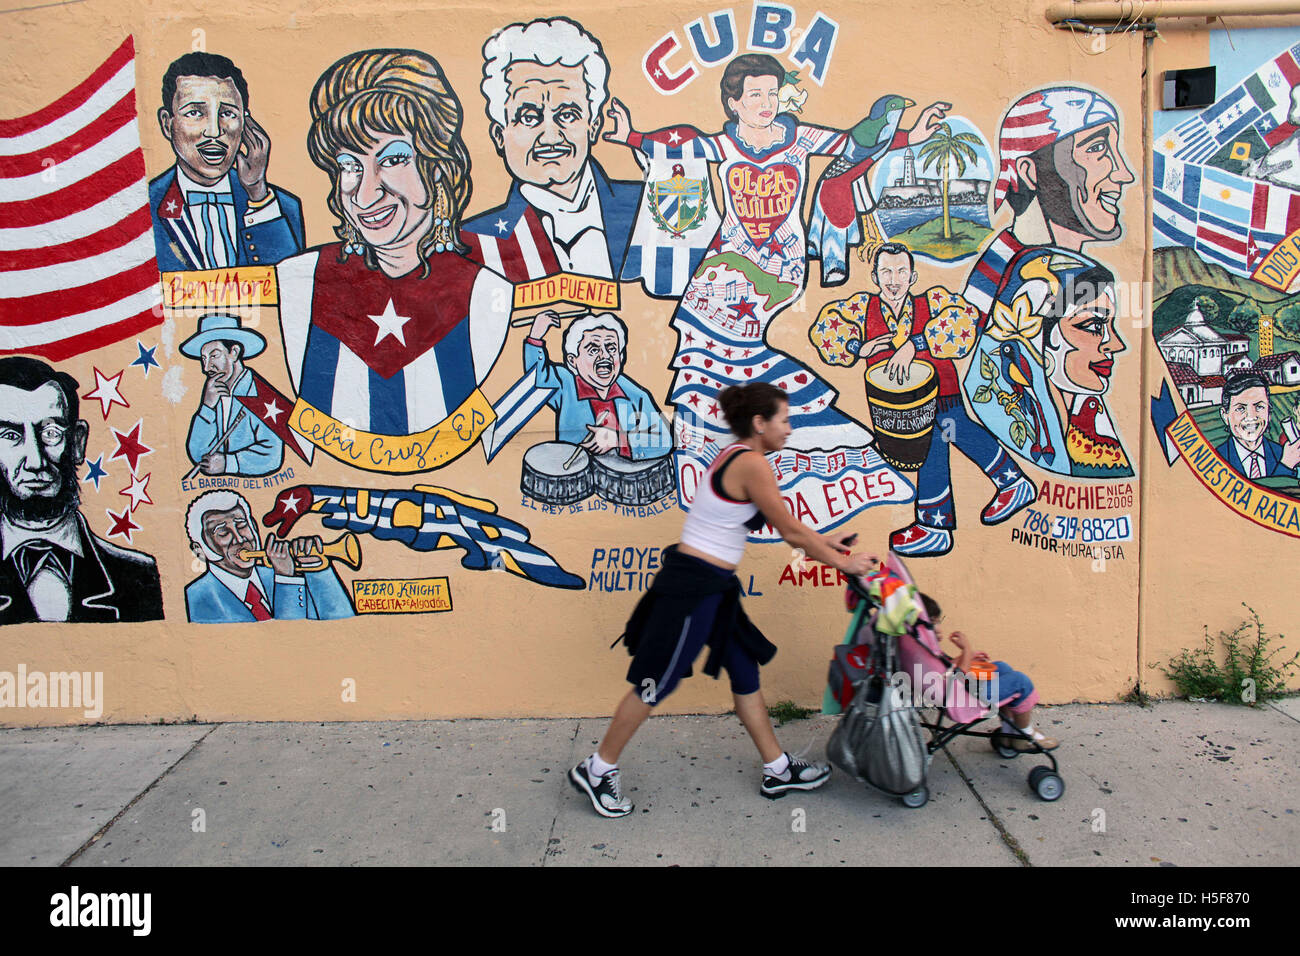 Miami, Floride, USA. Jan 11, 2011. Colorful wall mural graffiti dans la communauté de l'influence de Cuba la petite havane. Little Havana (La Pequena Habana) est un quartier au sein de la ville de Miami. La maison à beaucoup de résidents immigrés cubains. Little Havana est noté comme un centre social, culturel et politique dans l'activité de Miami, connu pour ses repères, y compris de Calle Ocho c'est sans doute le meilleur quartier connu pour les Cubains exilés dans le monde, et que la capitale culturelle et politique du peuple cubain d'Américains. Caractérisée par une solide vie de la rue, d'excellents restaurants, des activités culturelles, c cubain Banque D'Images